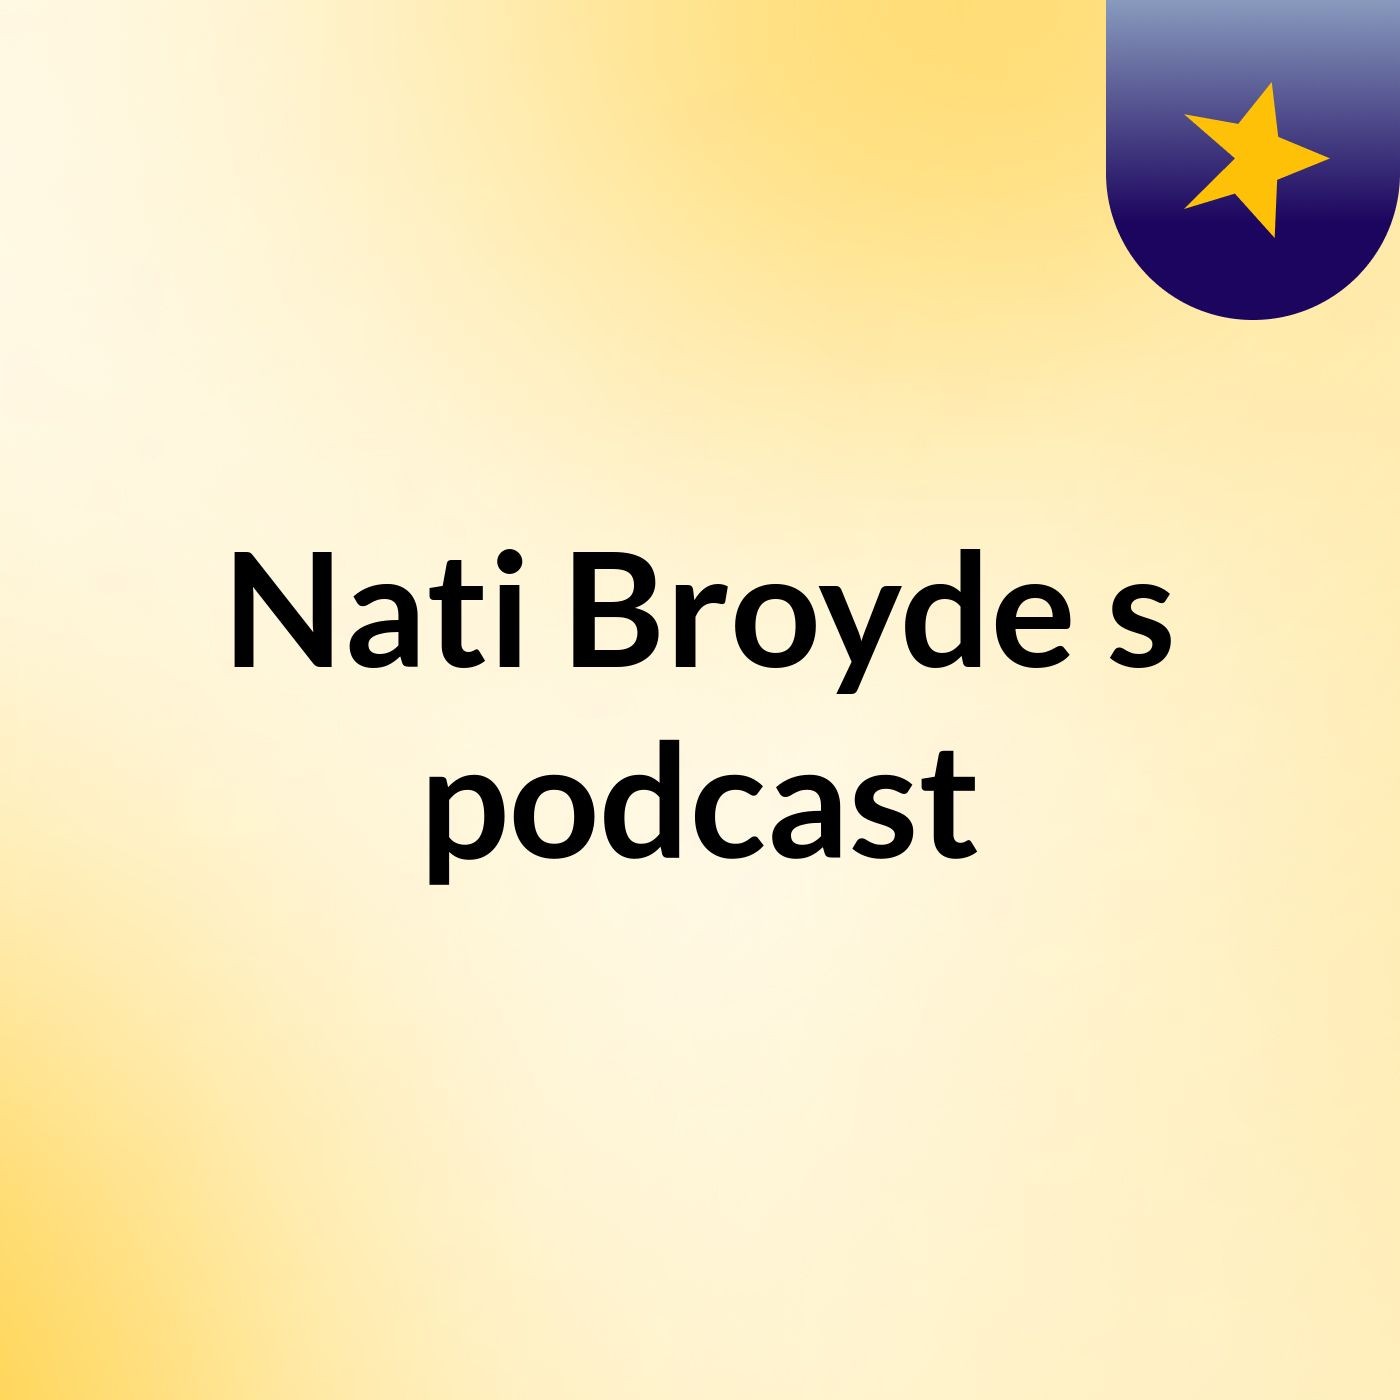 Nati Broyde's podcast